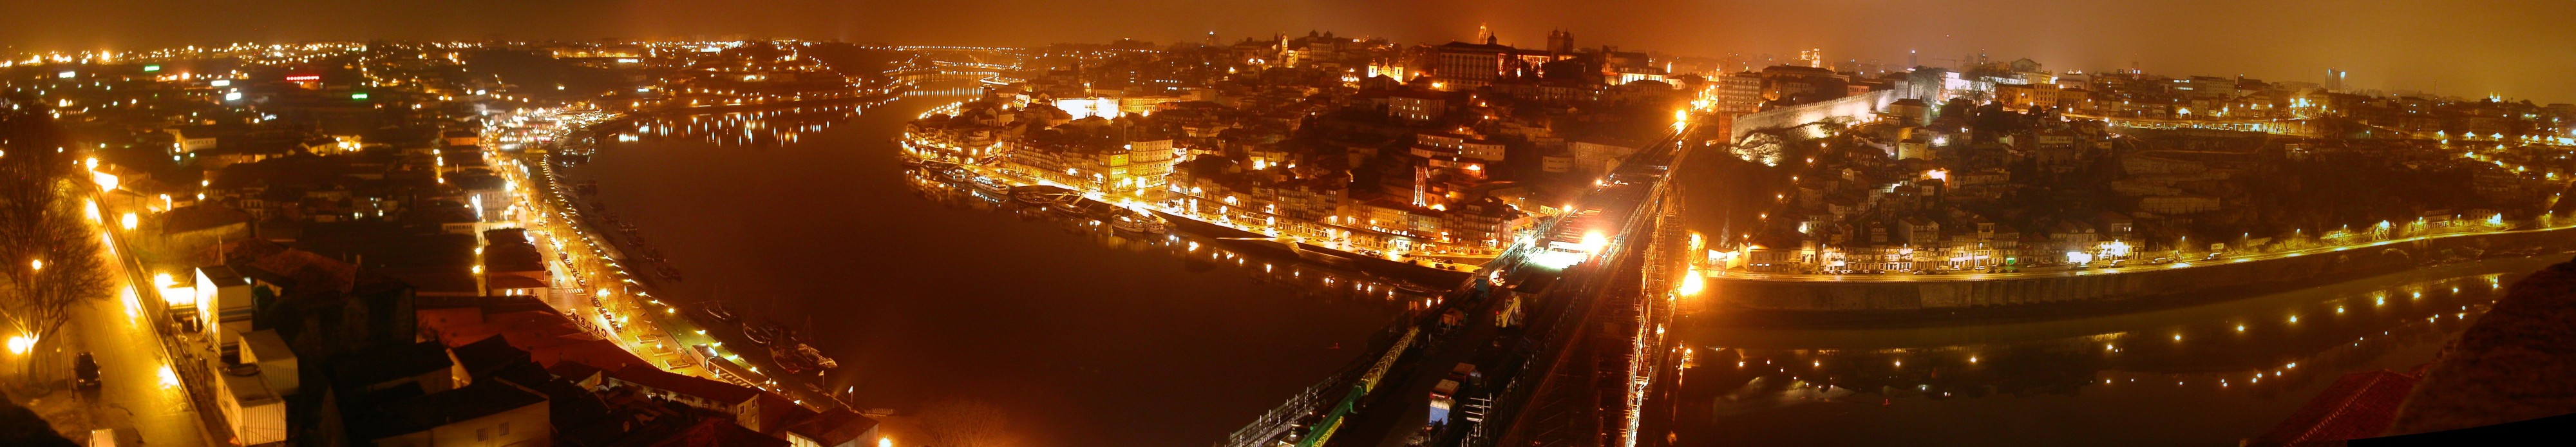 Porto nightscape